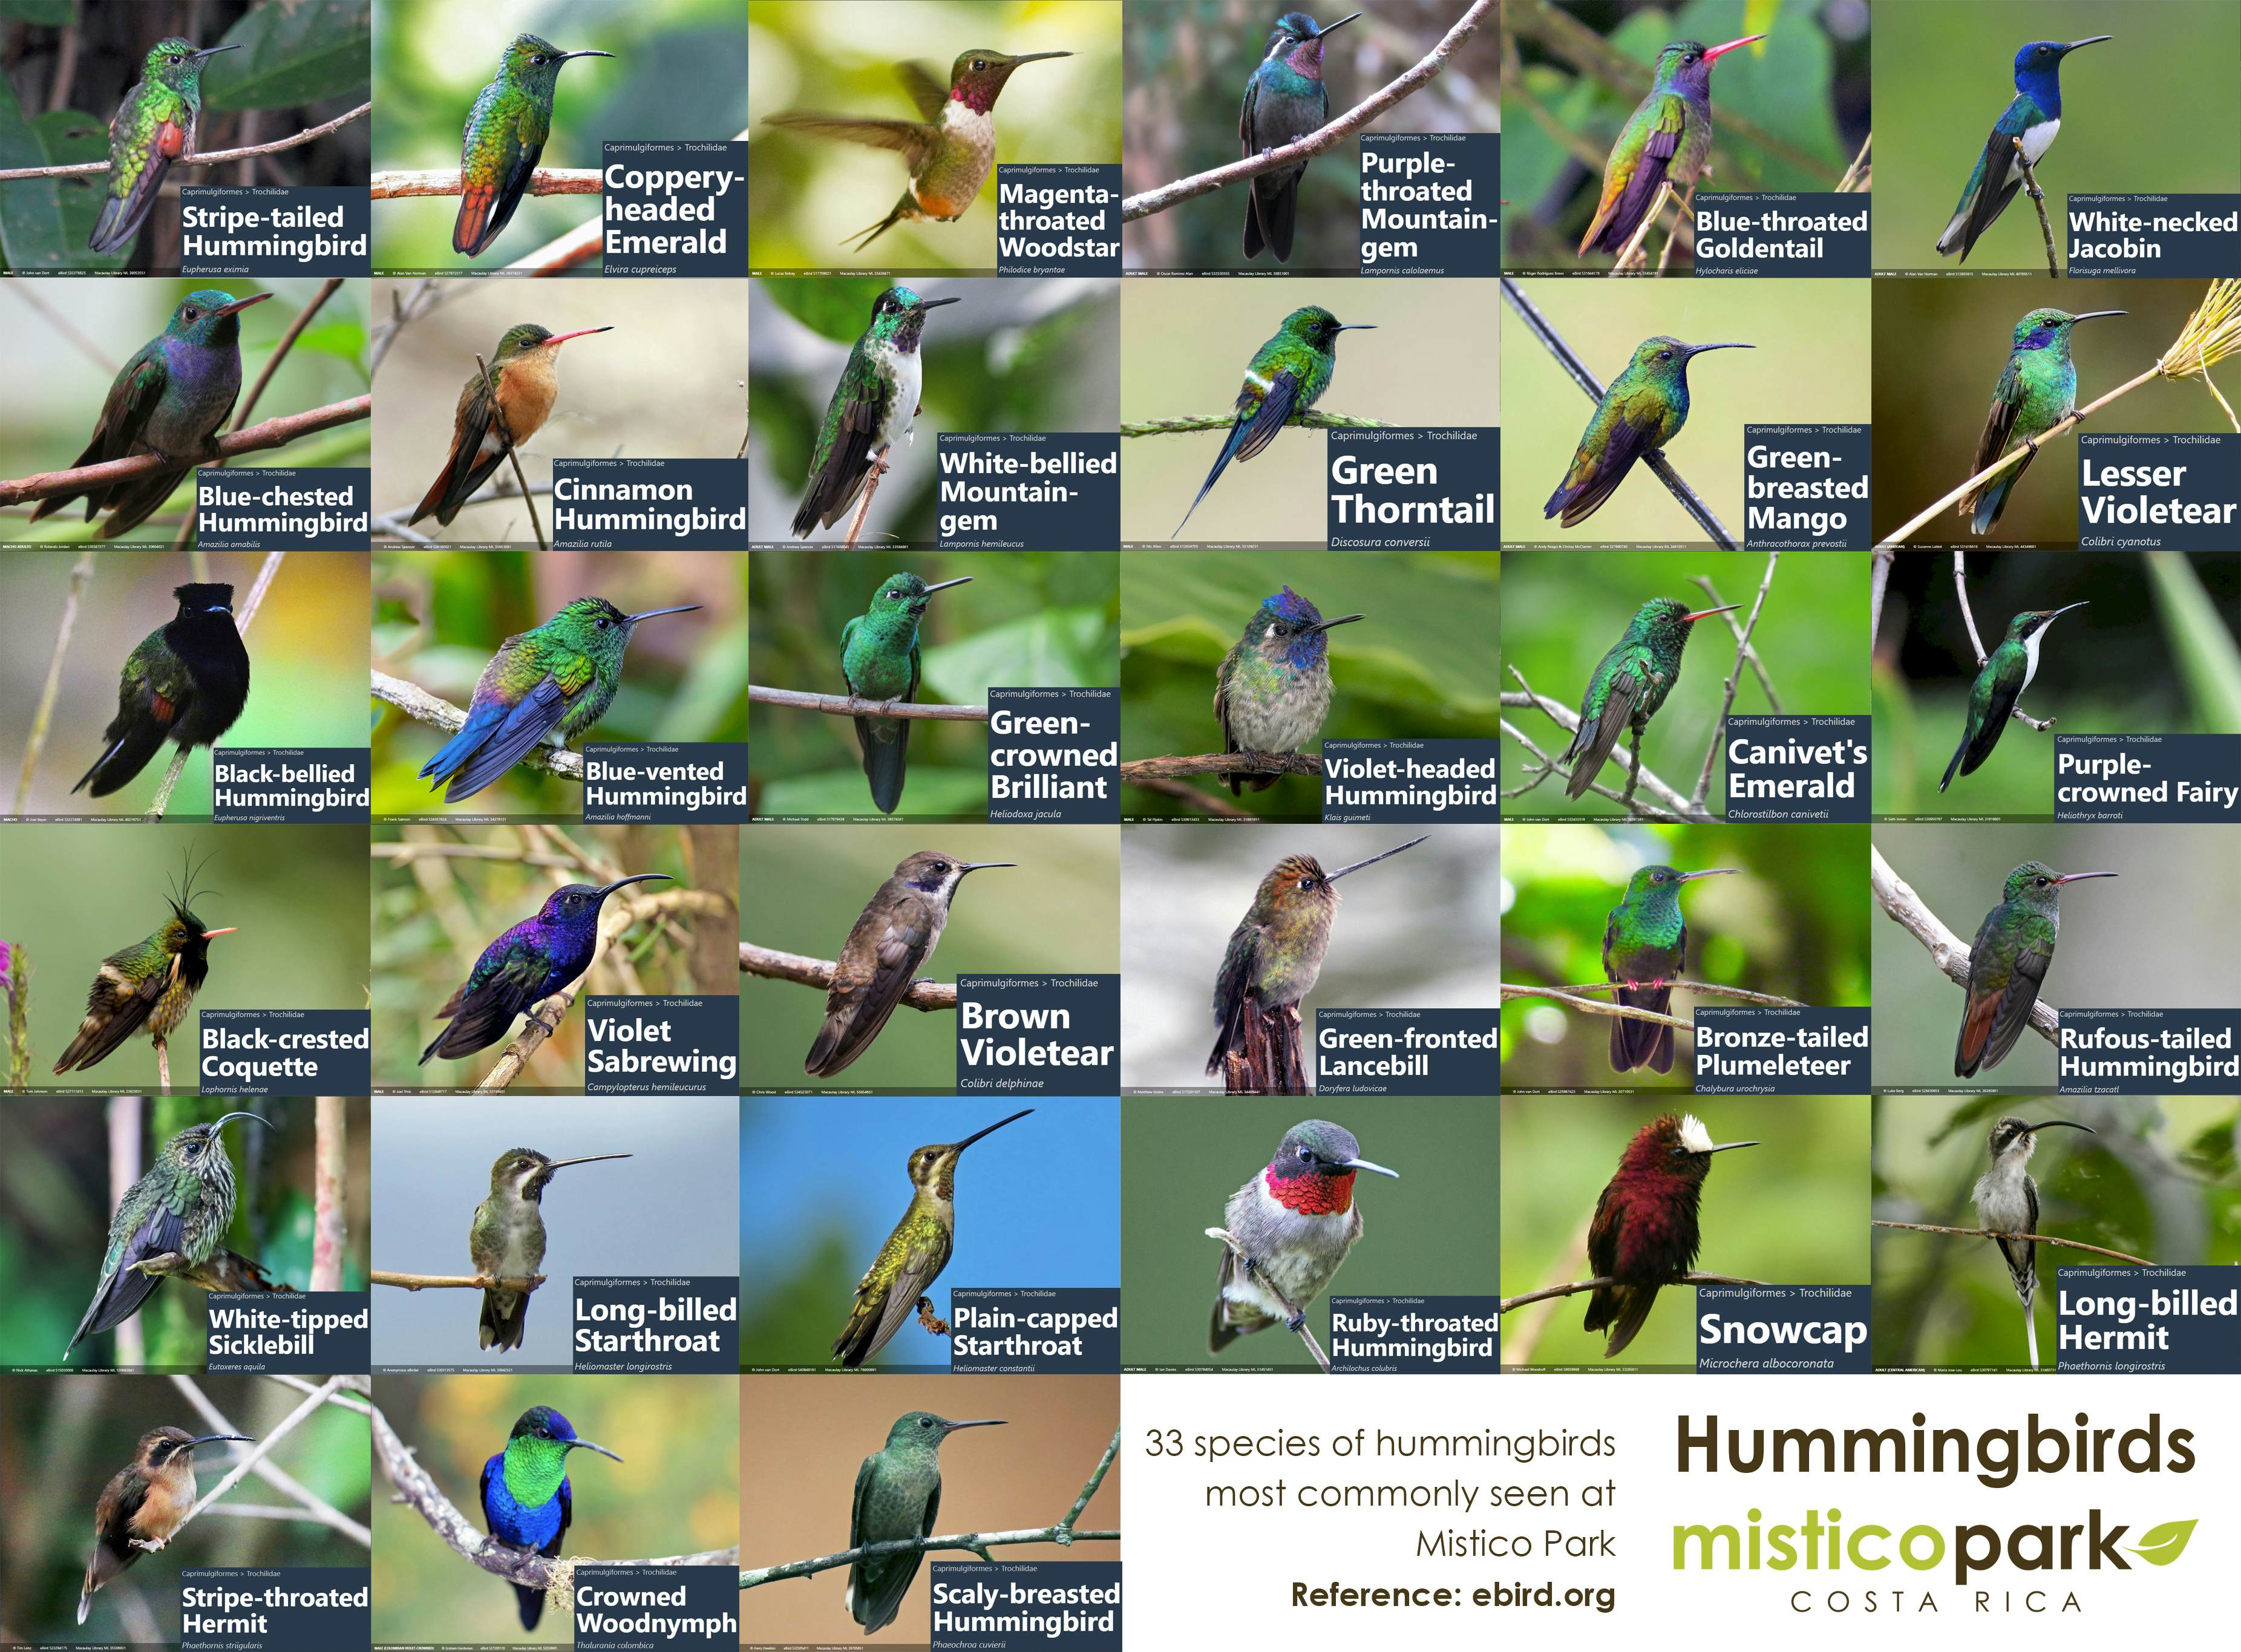 Hummingbirds in Mistico Park